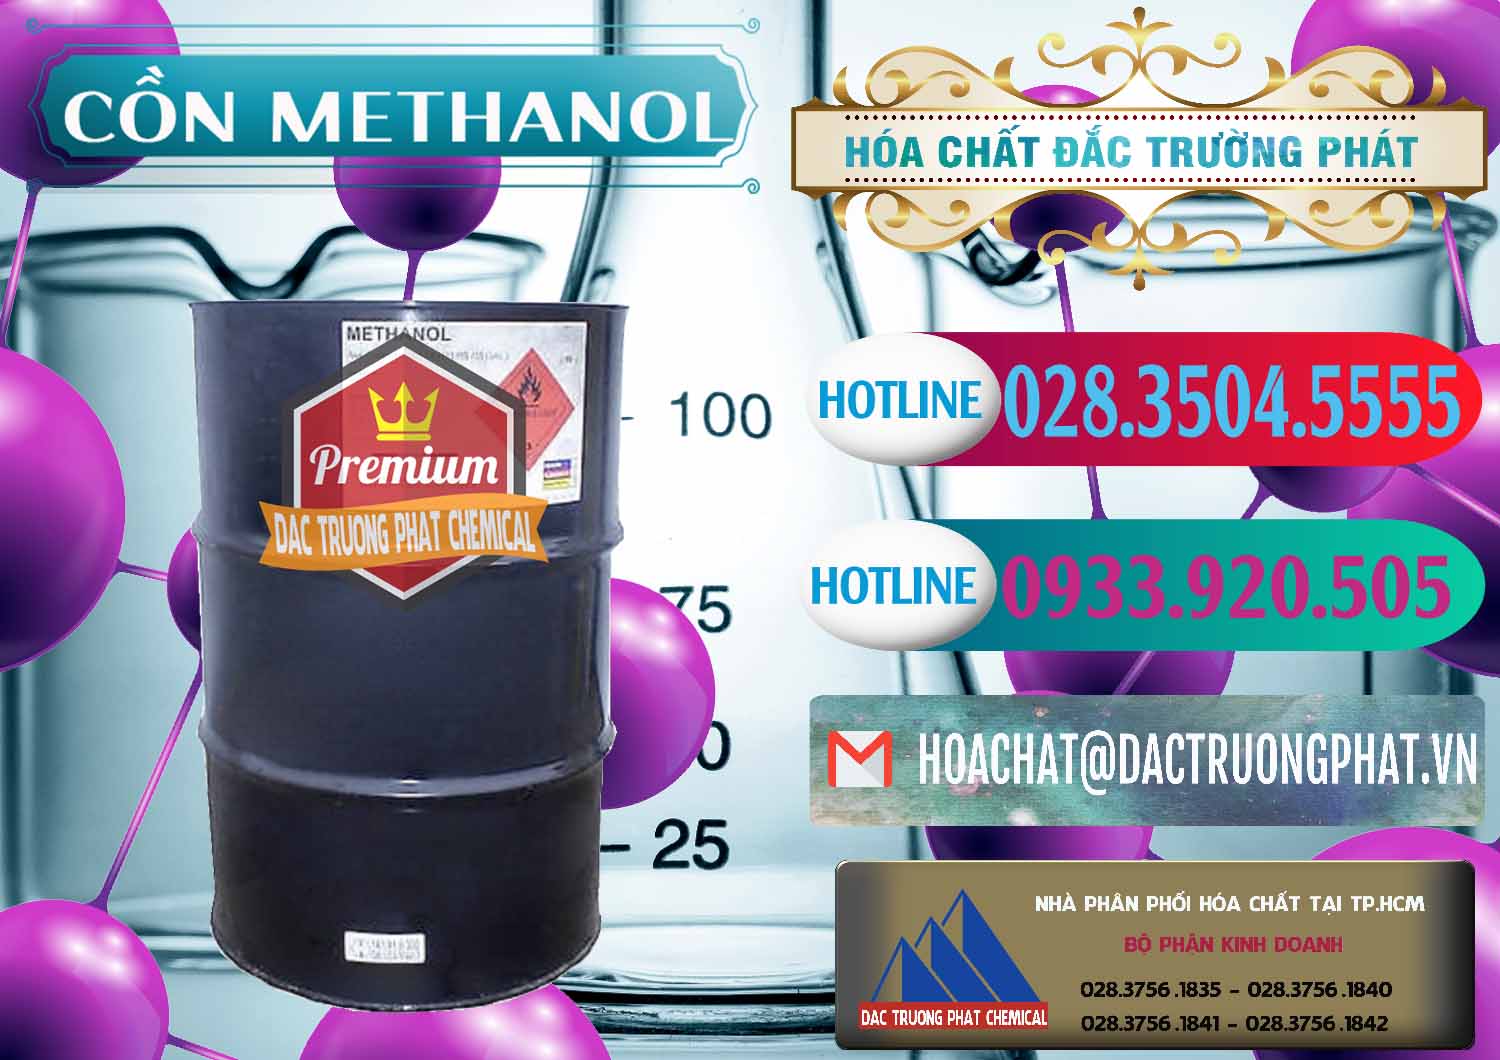 Cty chuyên bán - cung ứng Cồn Methanol - Methyl Alcohol Mã Lai Malaysia - 0331 - Cty cung cấp và bán hóa chất tại TP.HCM - truongphat.vn